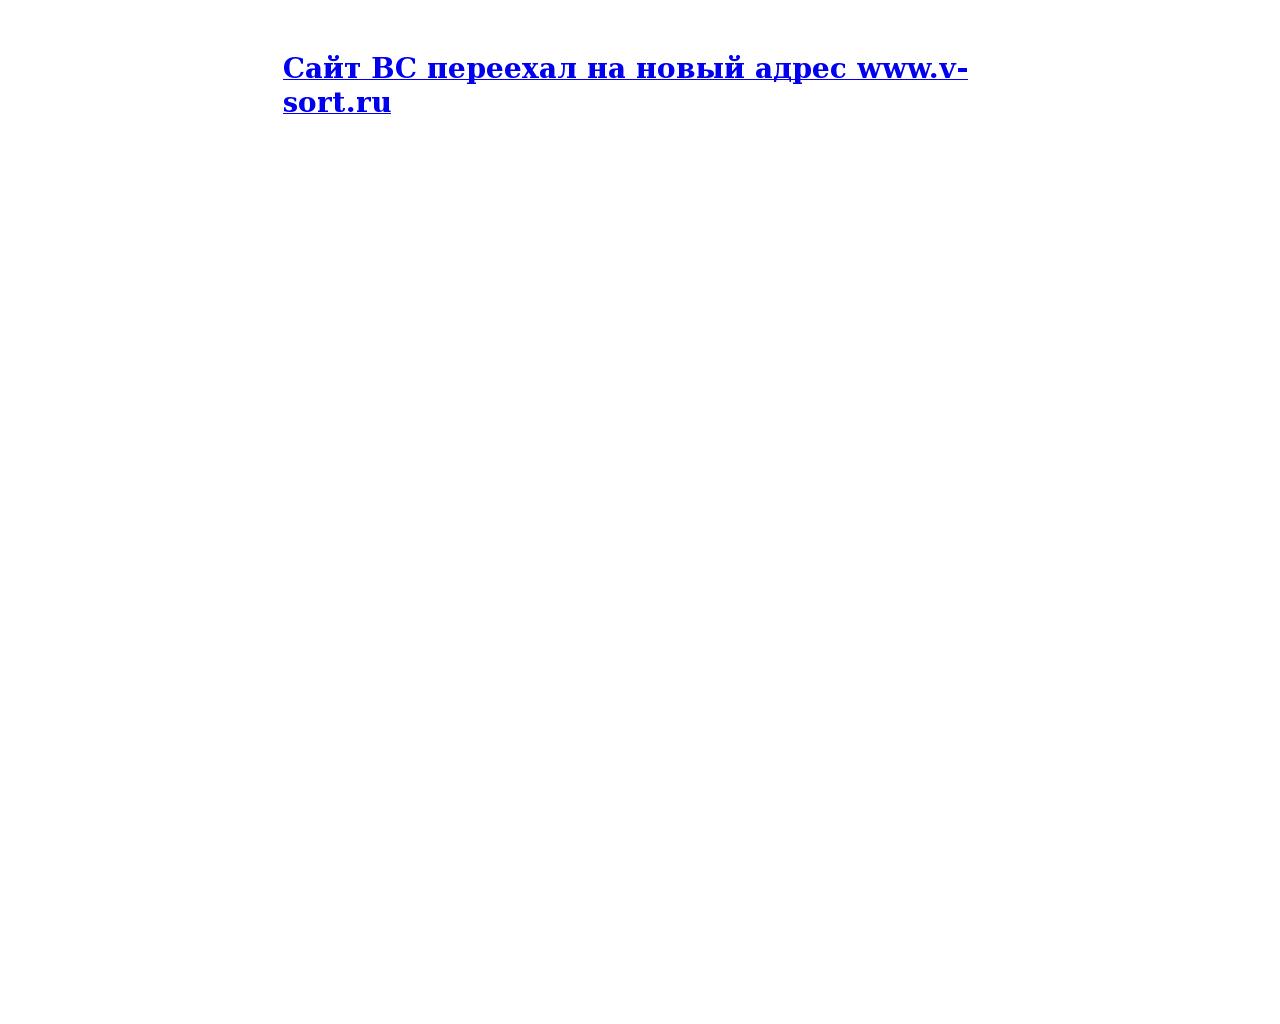 Изображение сайта vsort.ru в разрешении 1280x1024